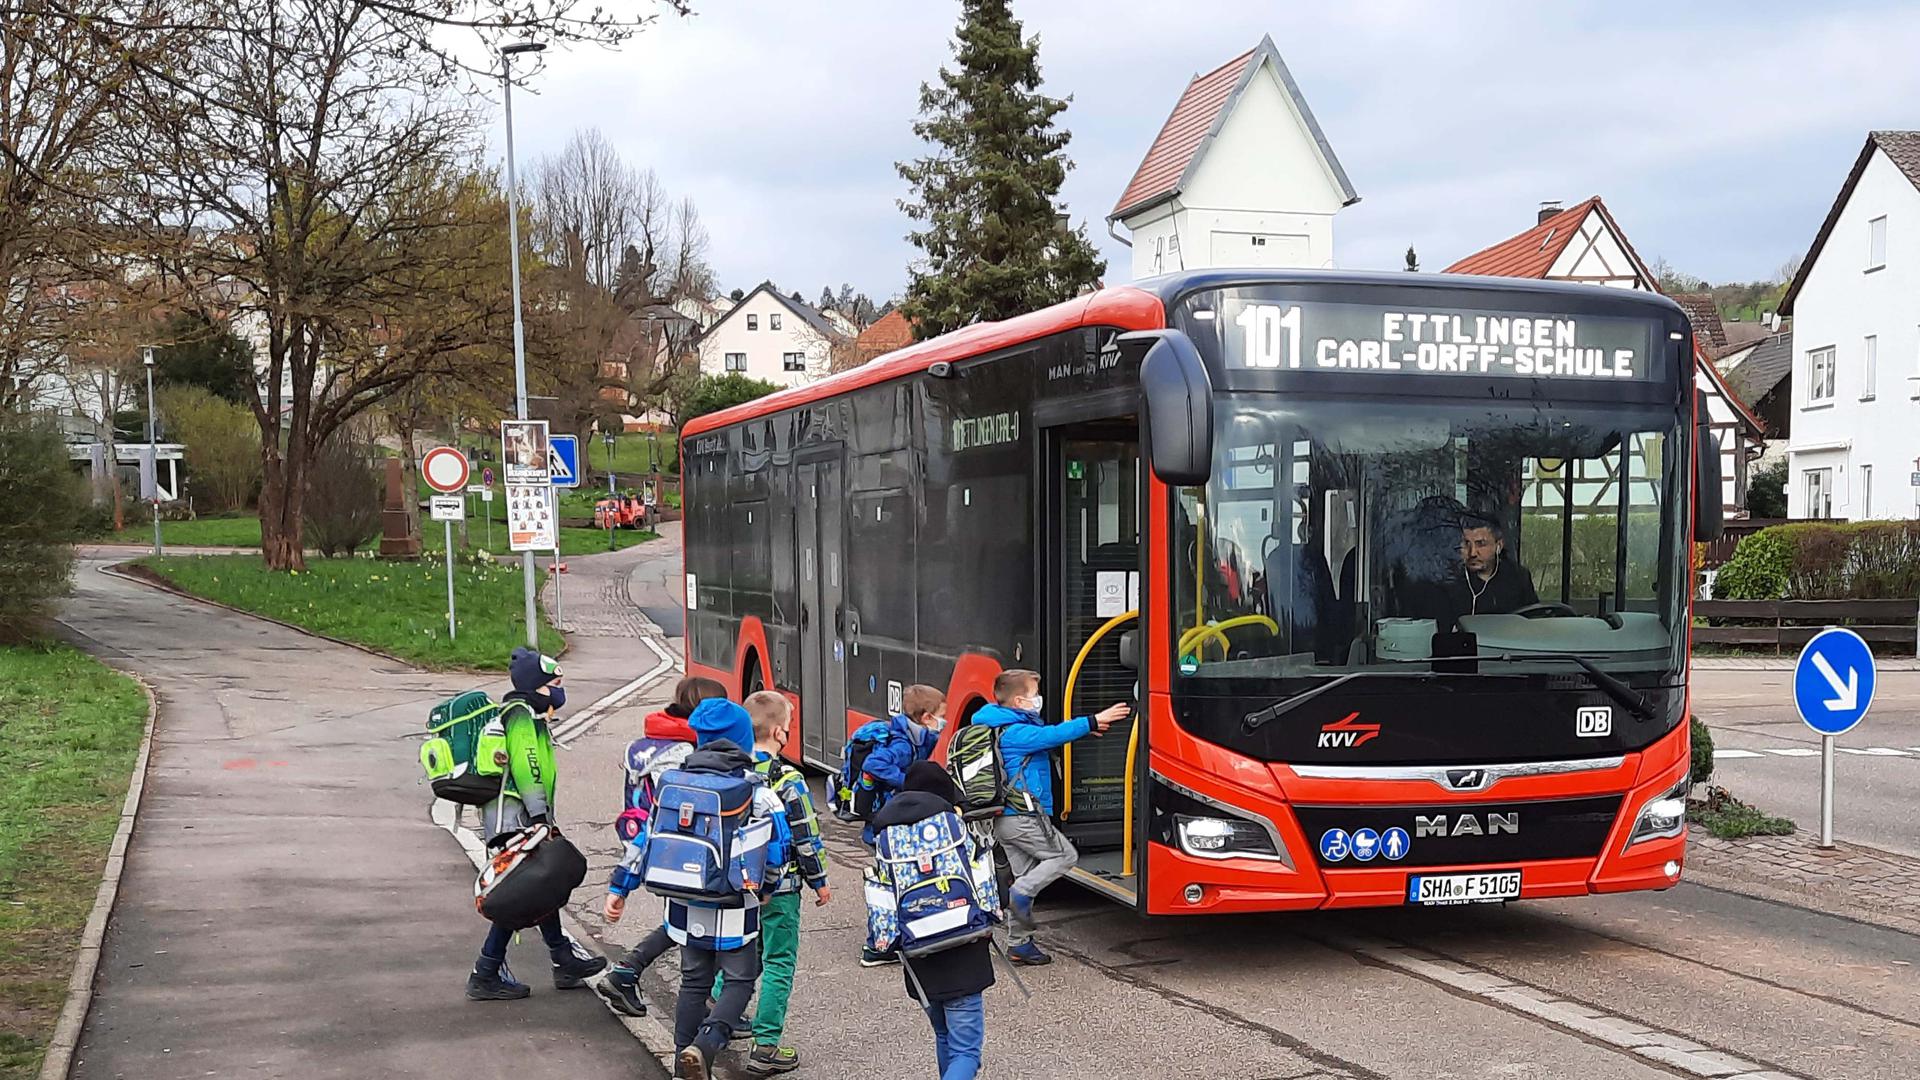 Bus und Kinder